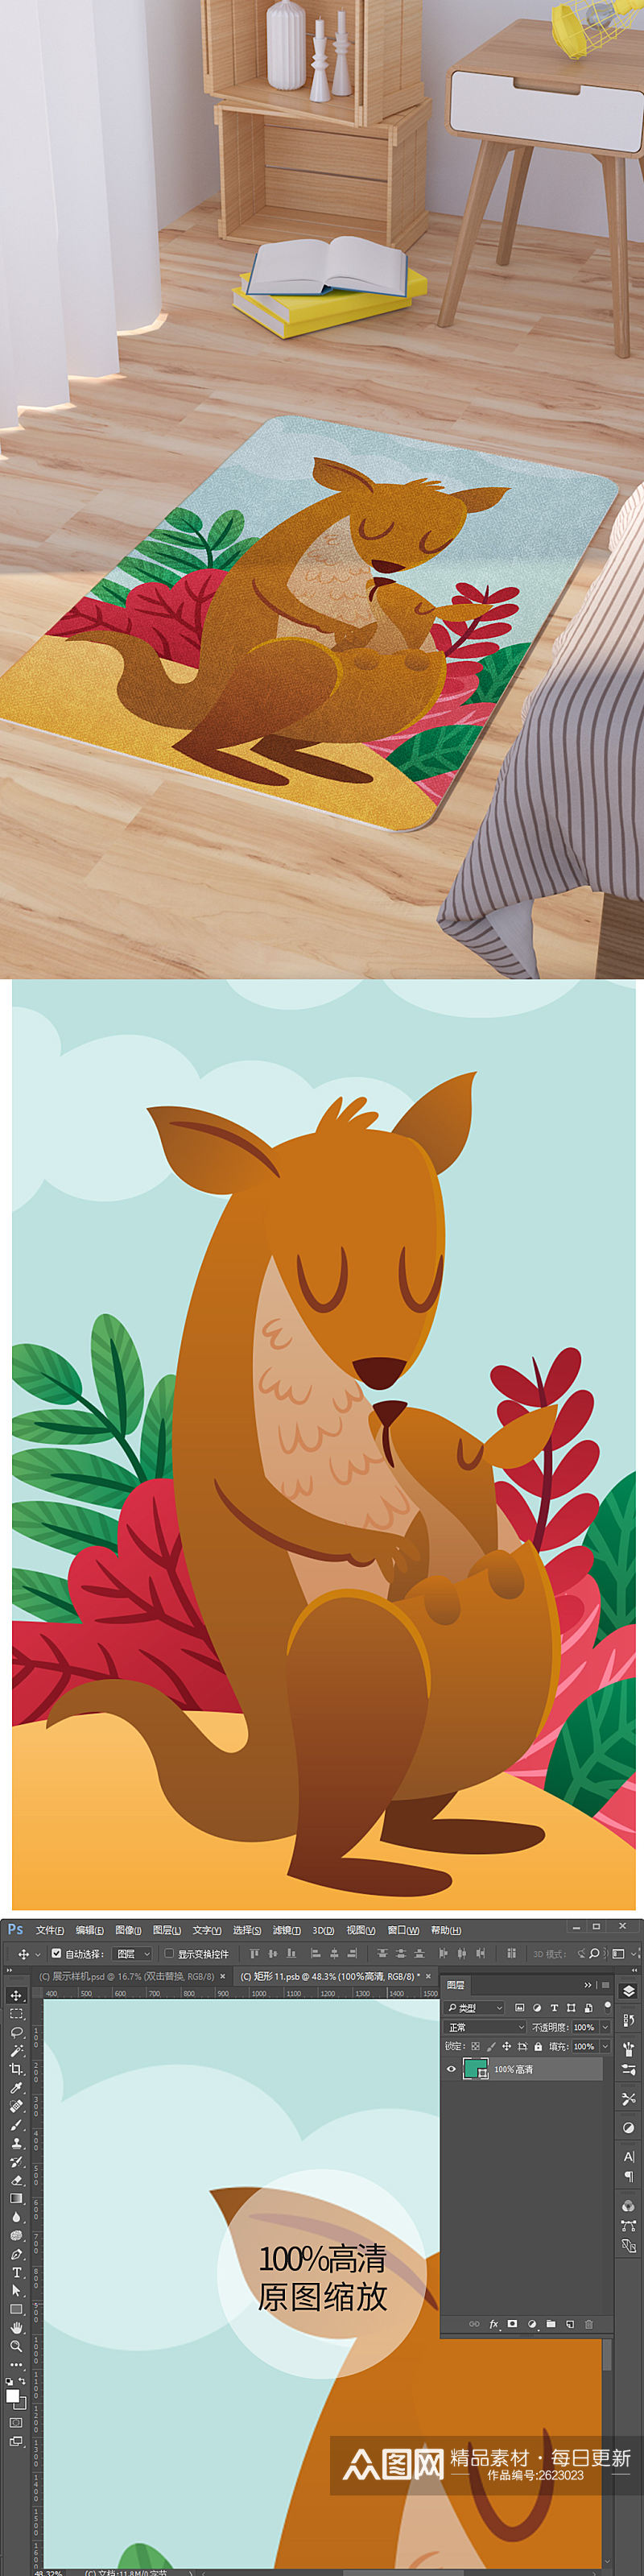 矢量手绘卡通可爱袋鼠母子脚垫地毯图案素材